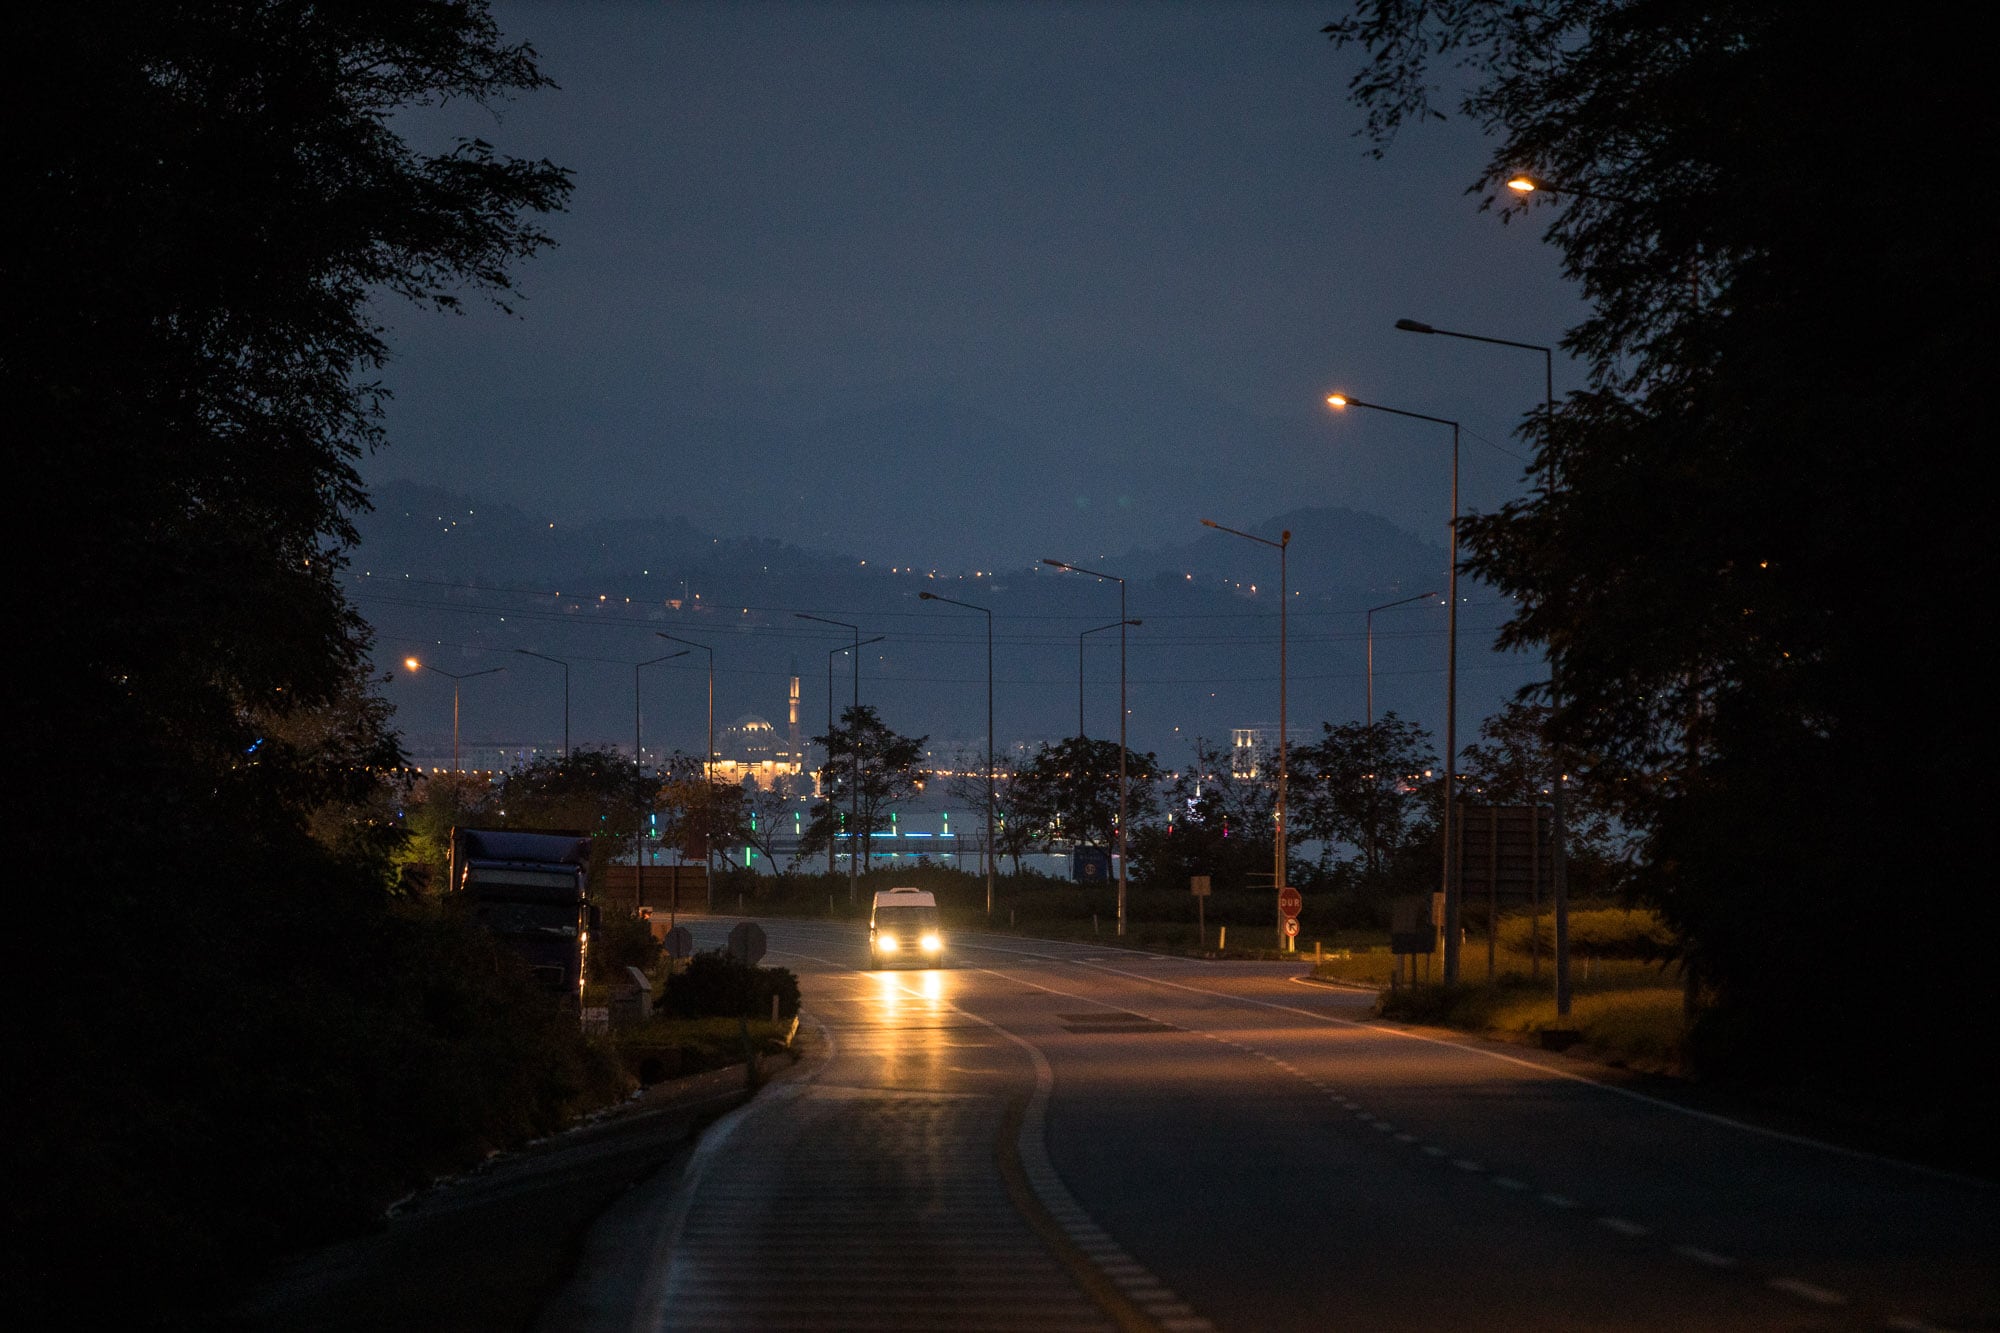 nightly road